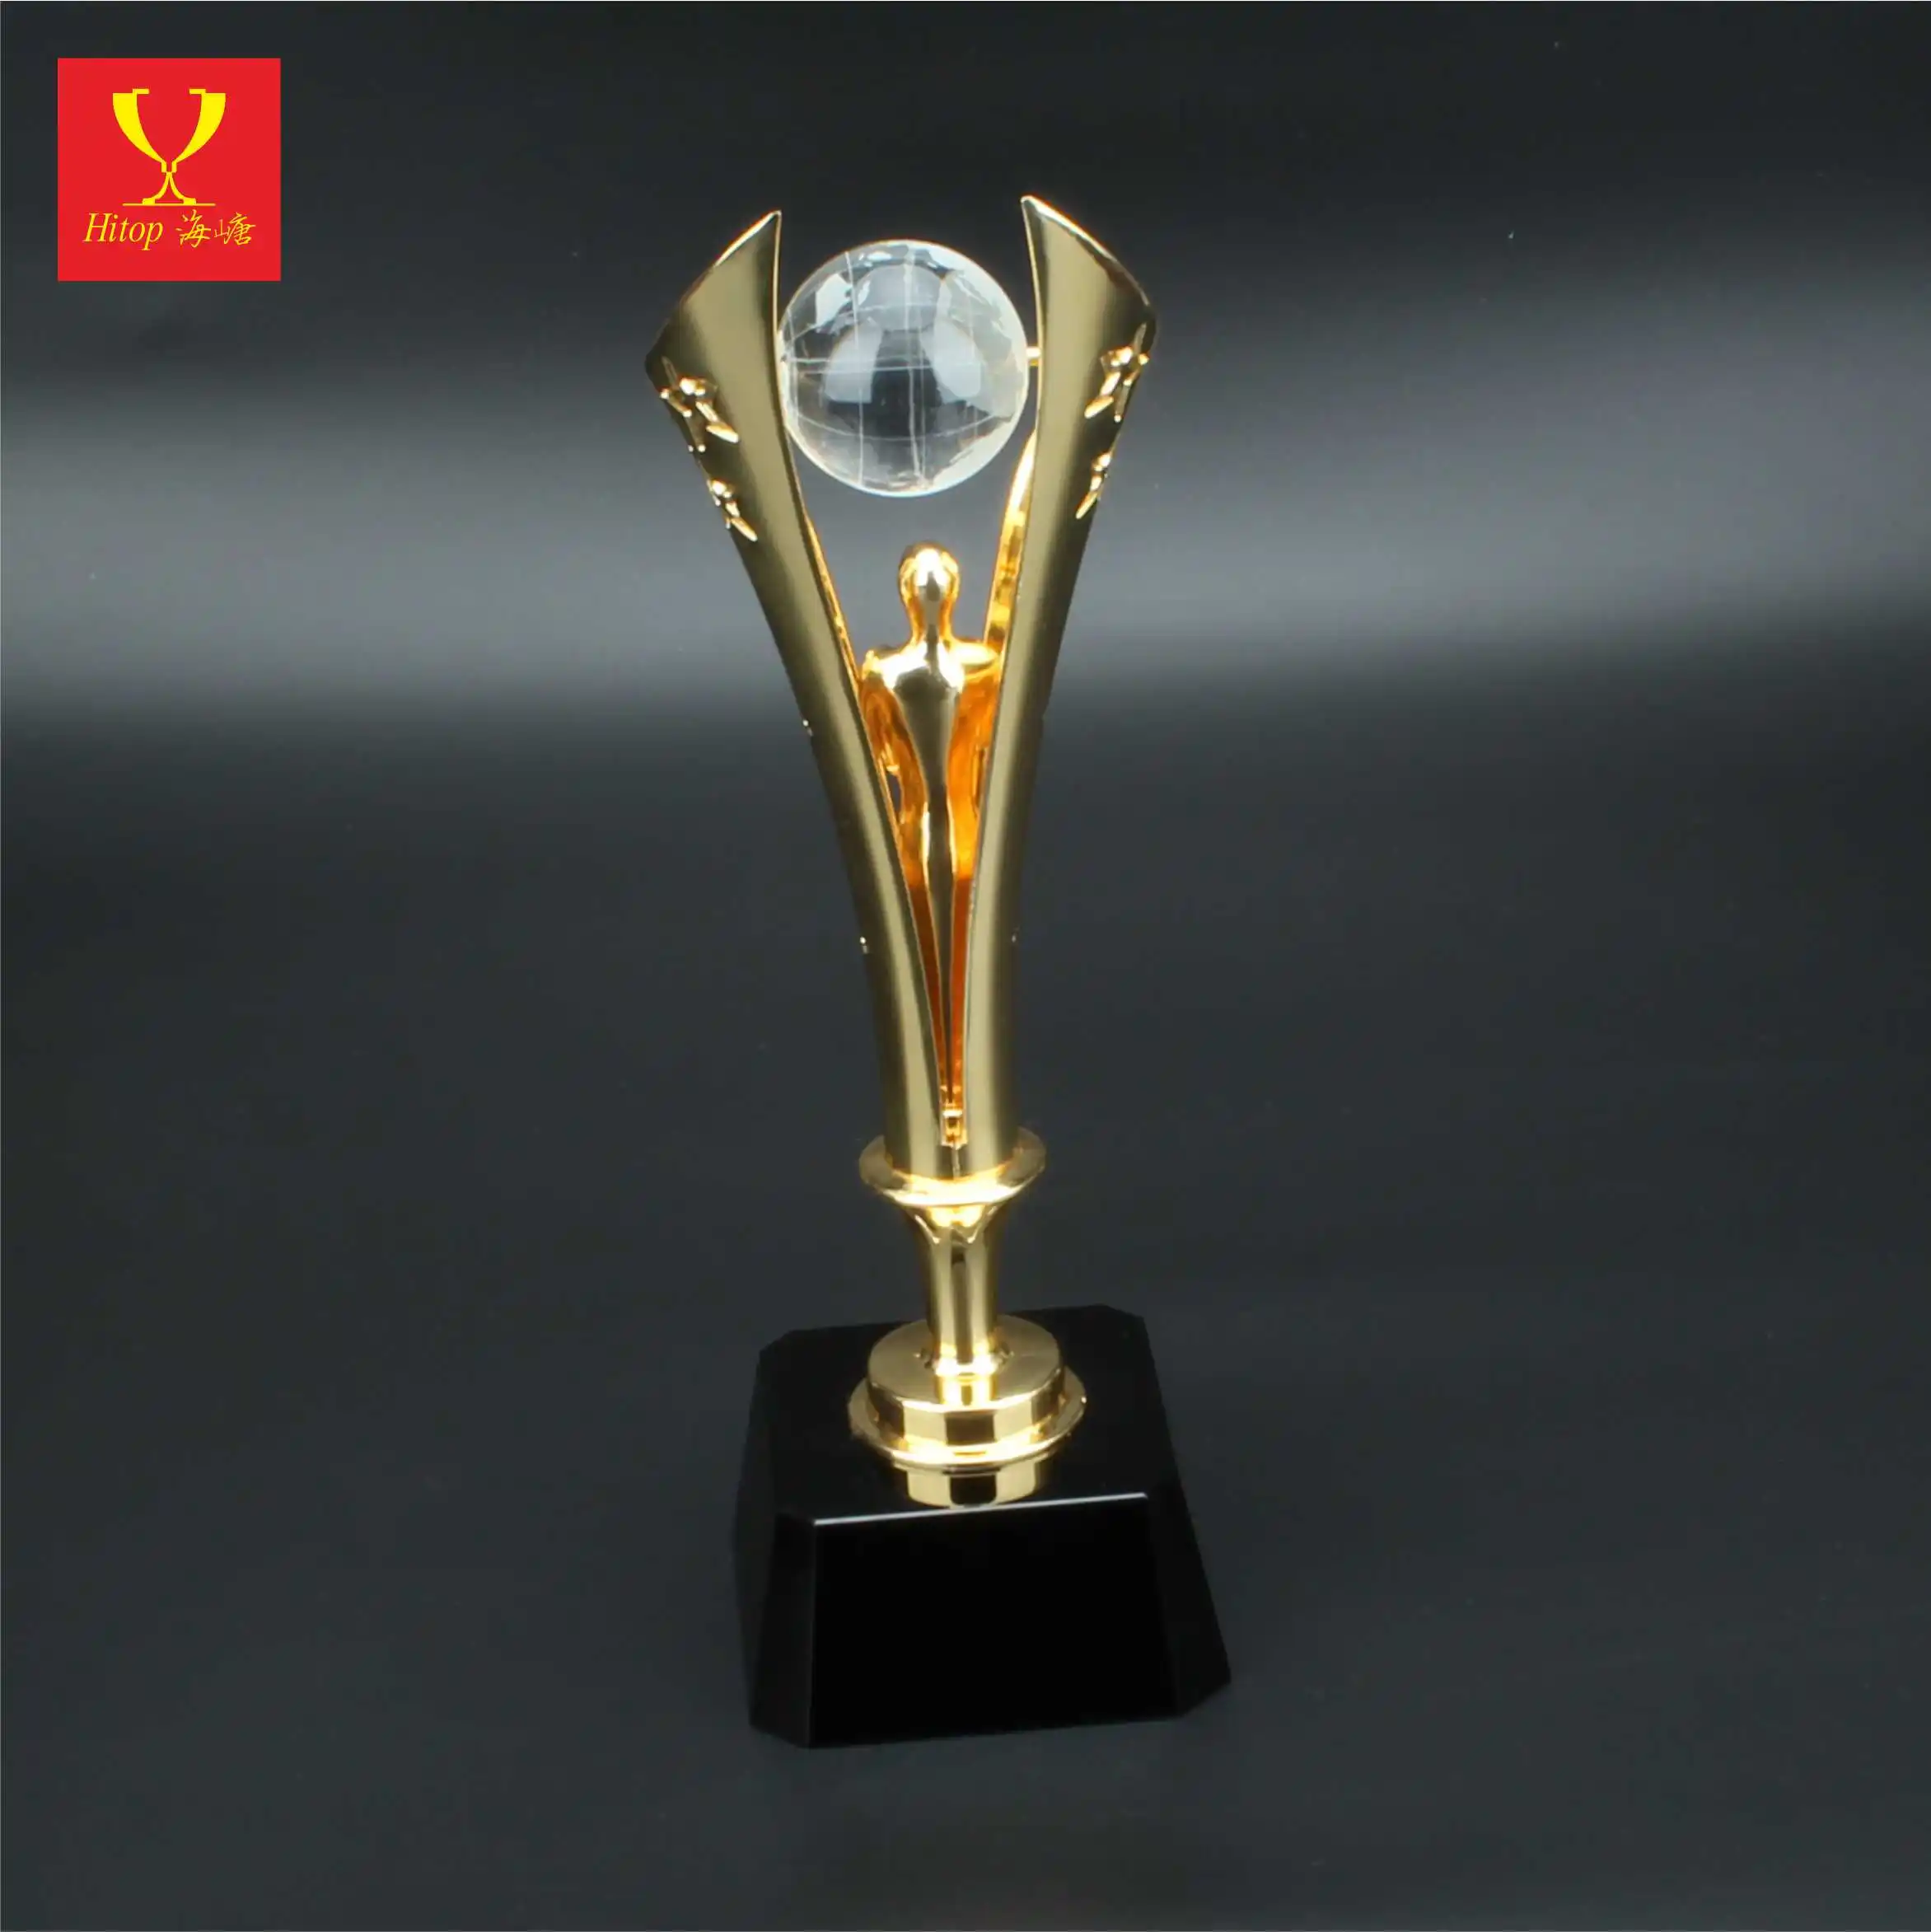 Trofeo premio di cristallo in metallo e trofeo nuova confezione regalo in oro Pujiang Design personalizzato in cristallo placcato europa